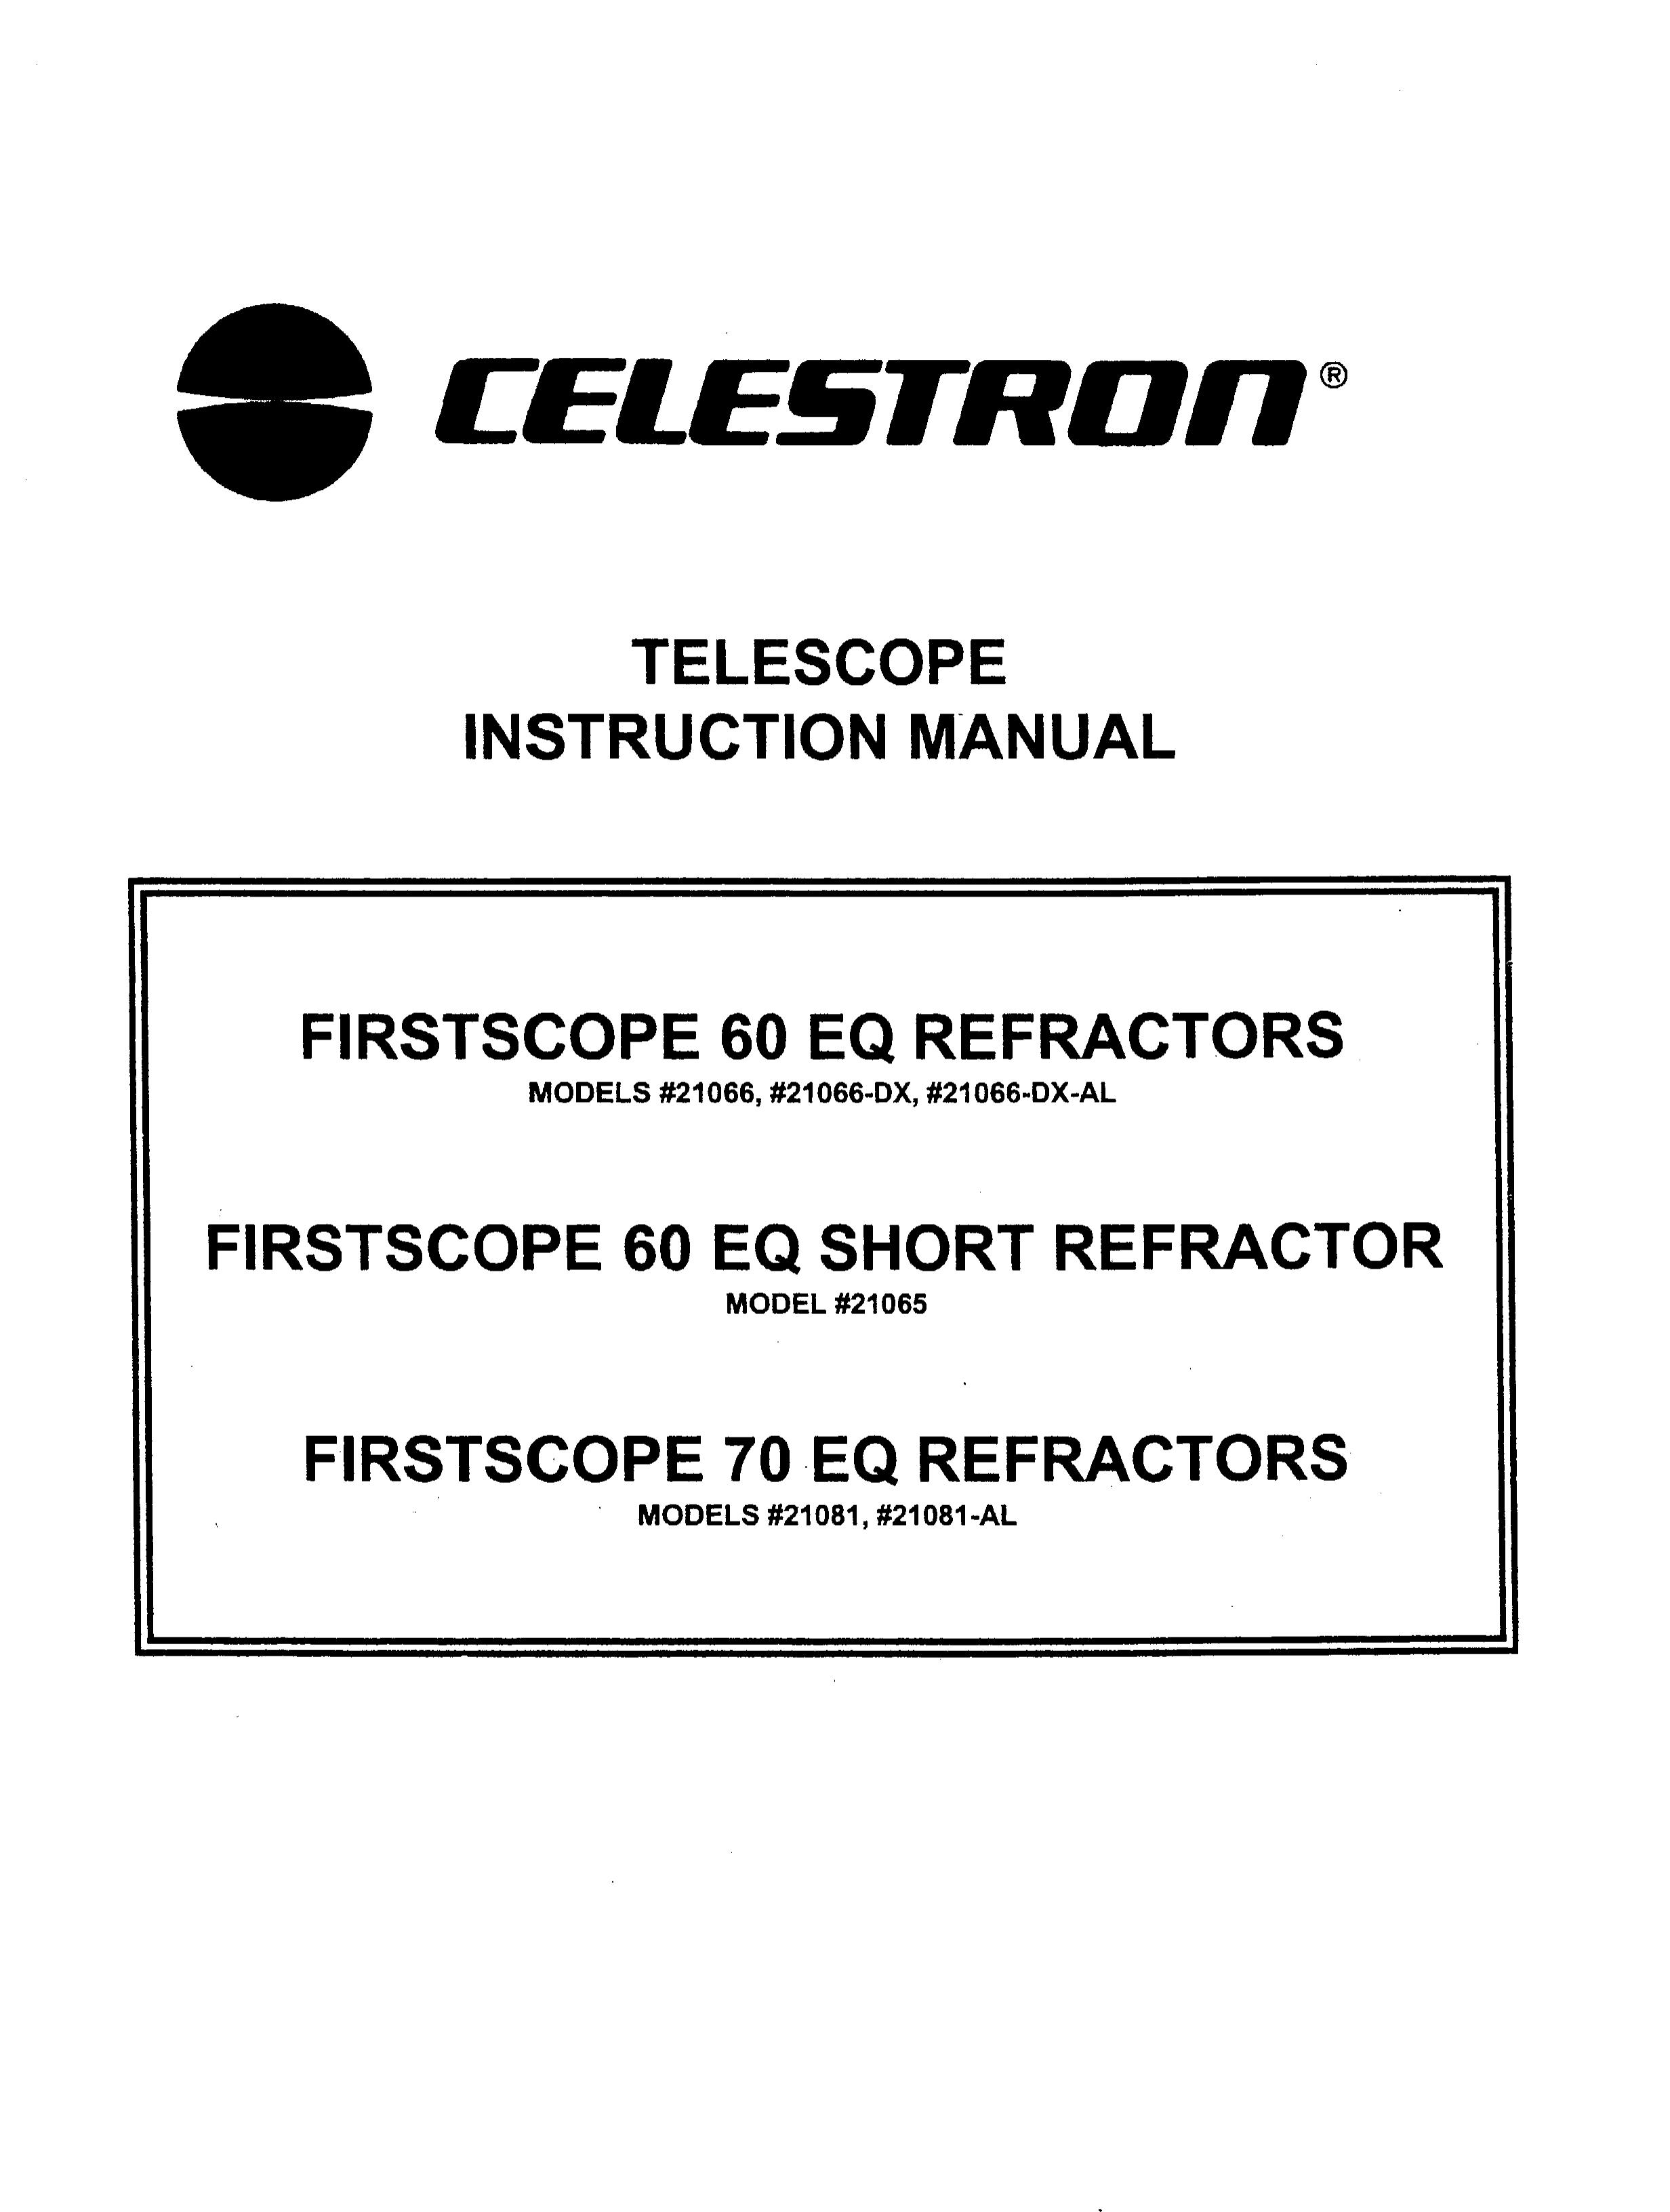 Celestron 21081 Telescope User Manual